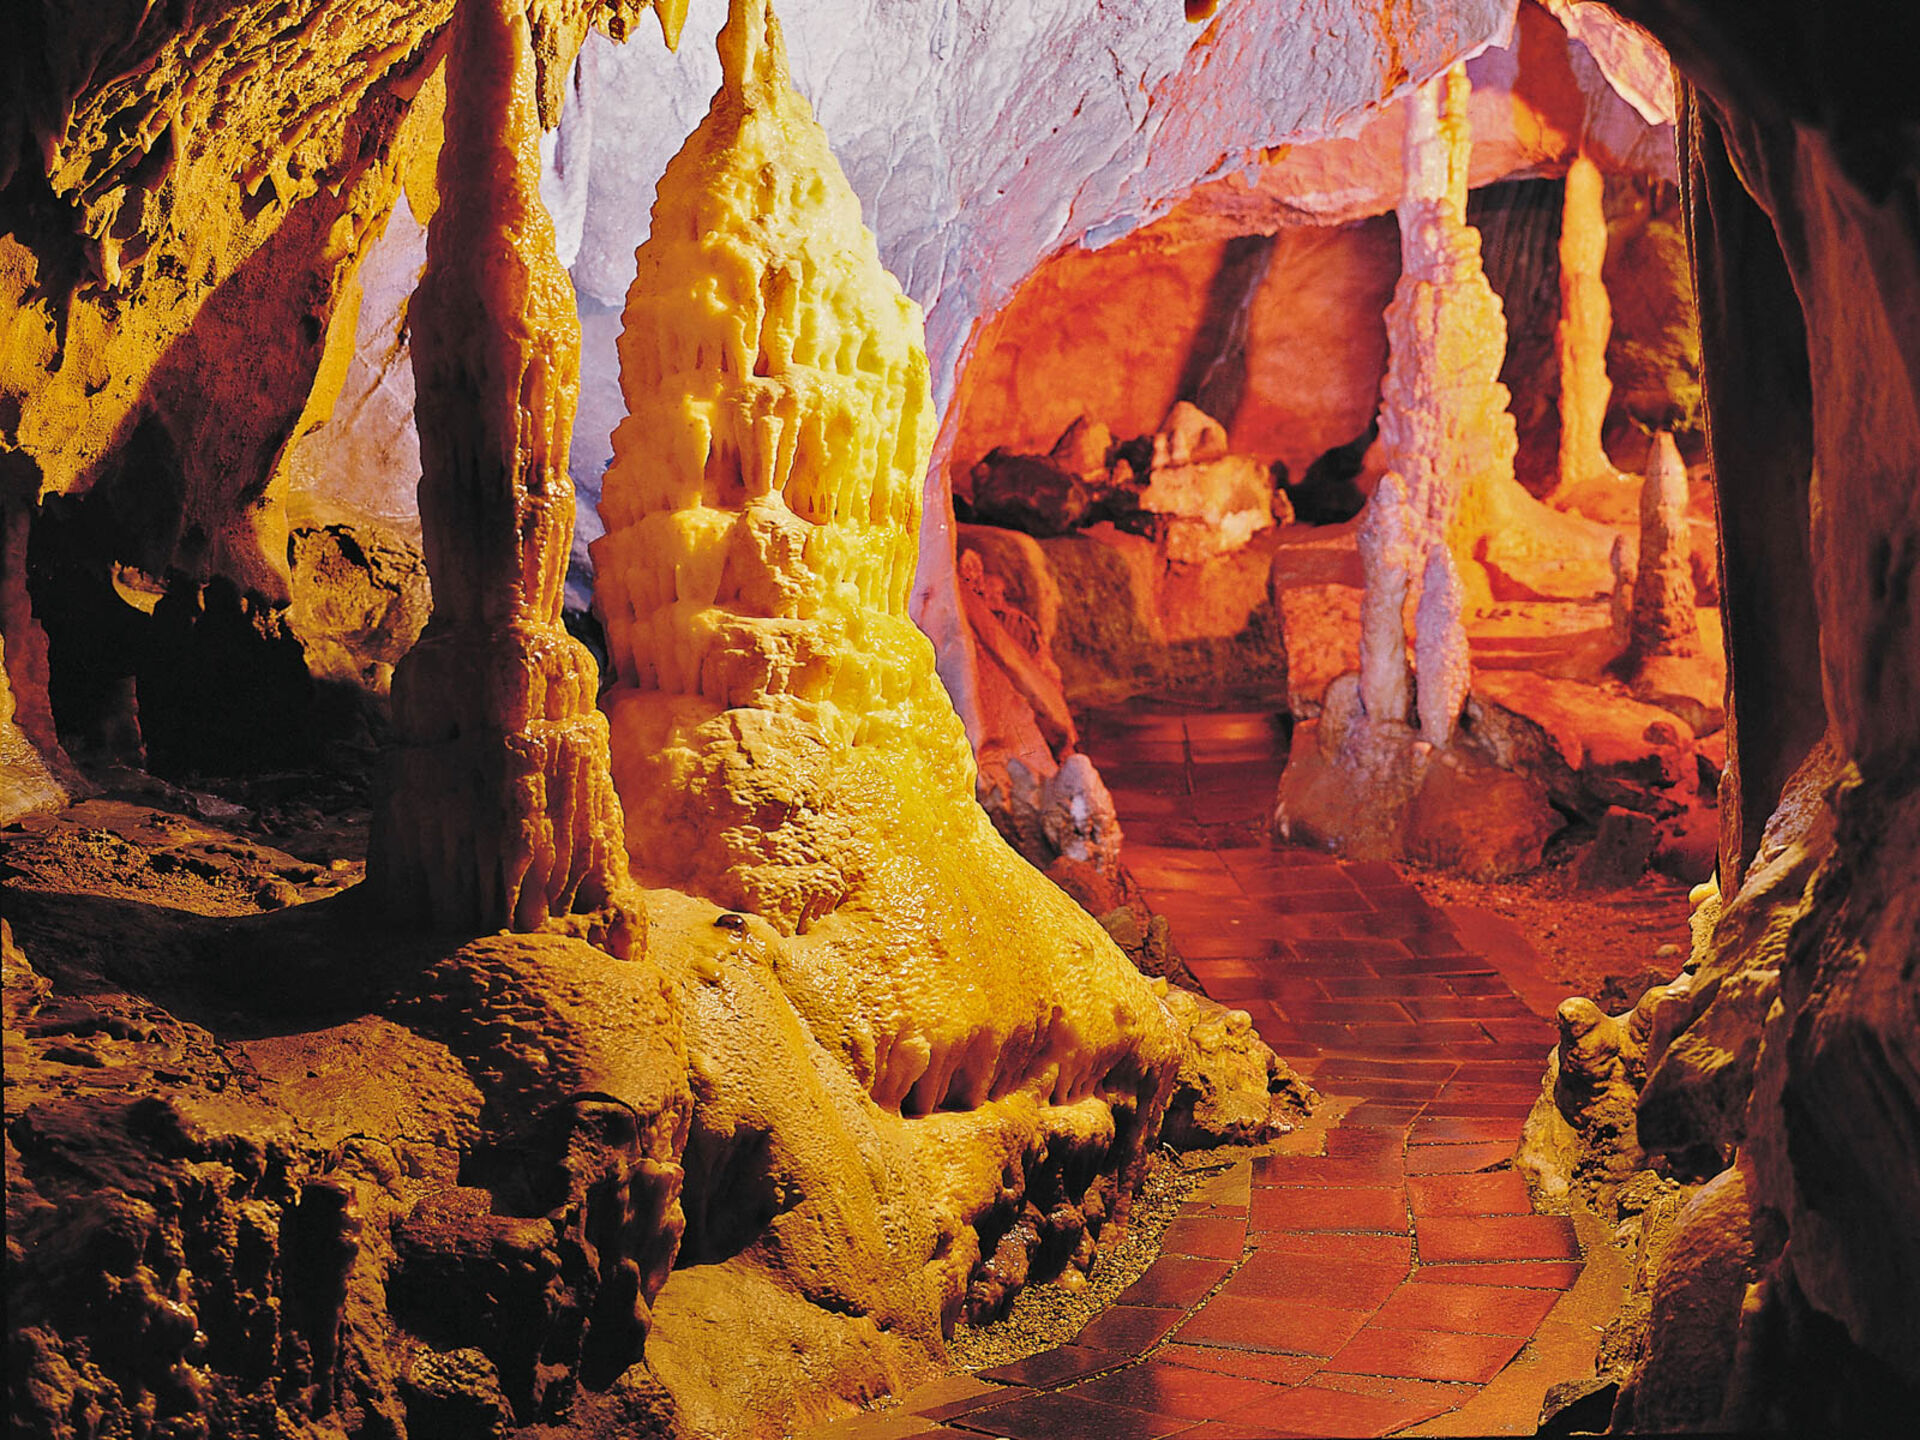 Atta cave in Attendorn in the Sauerland